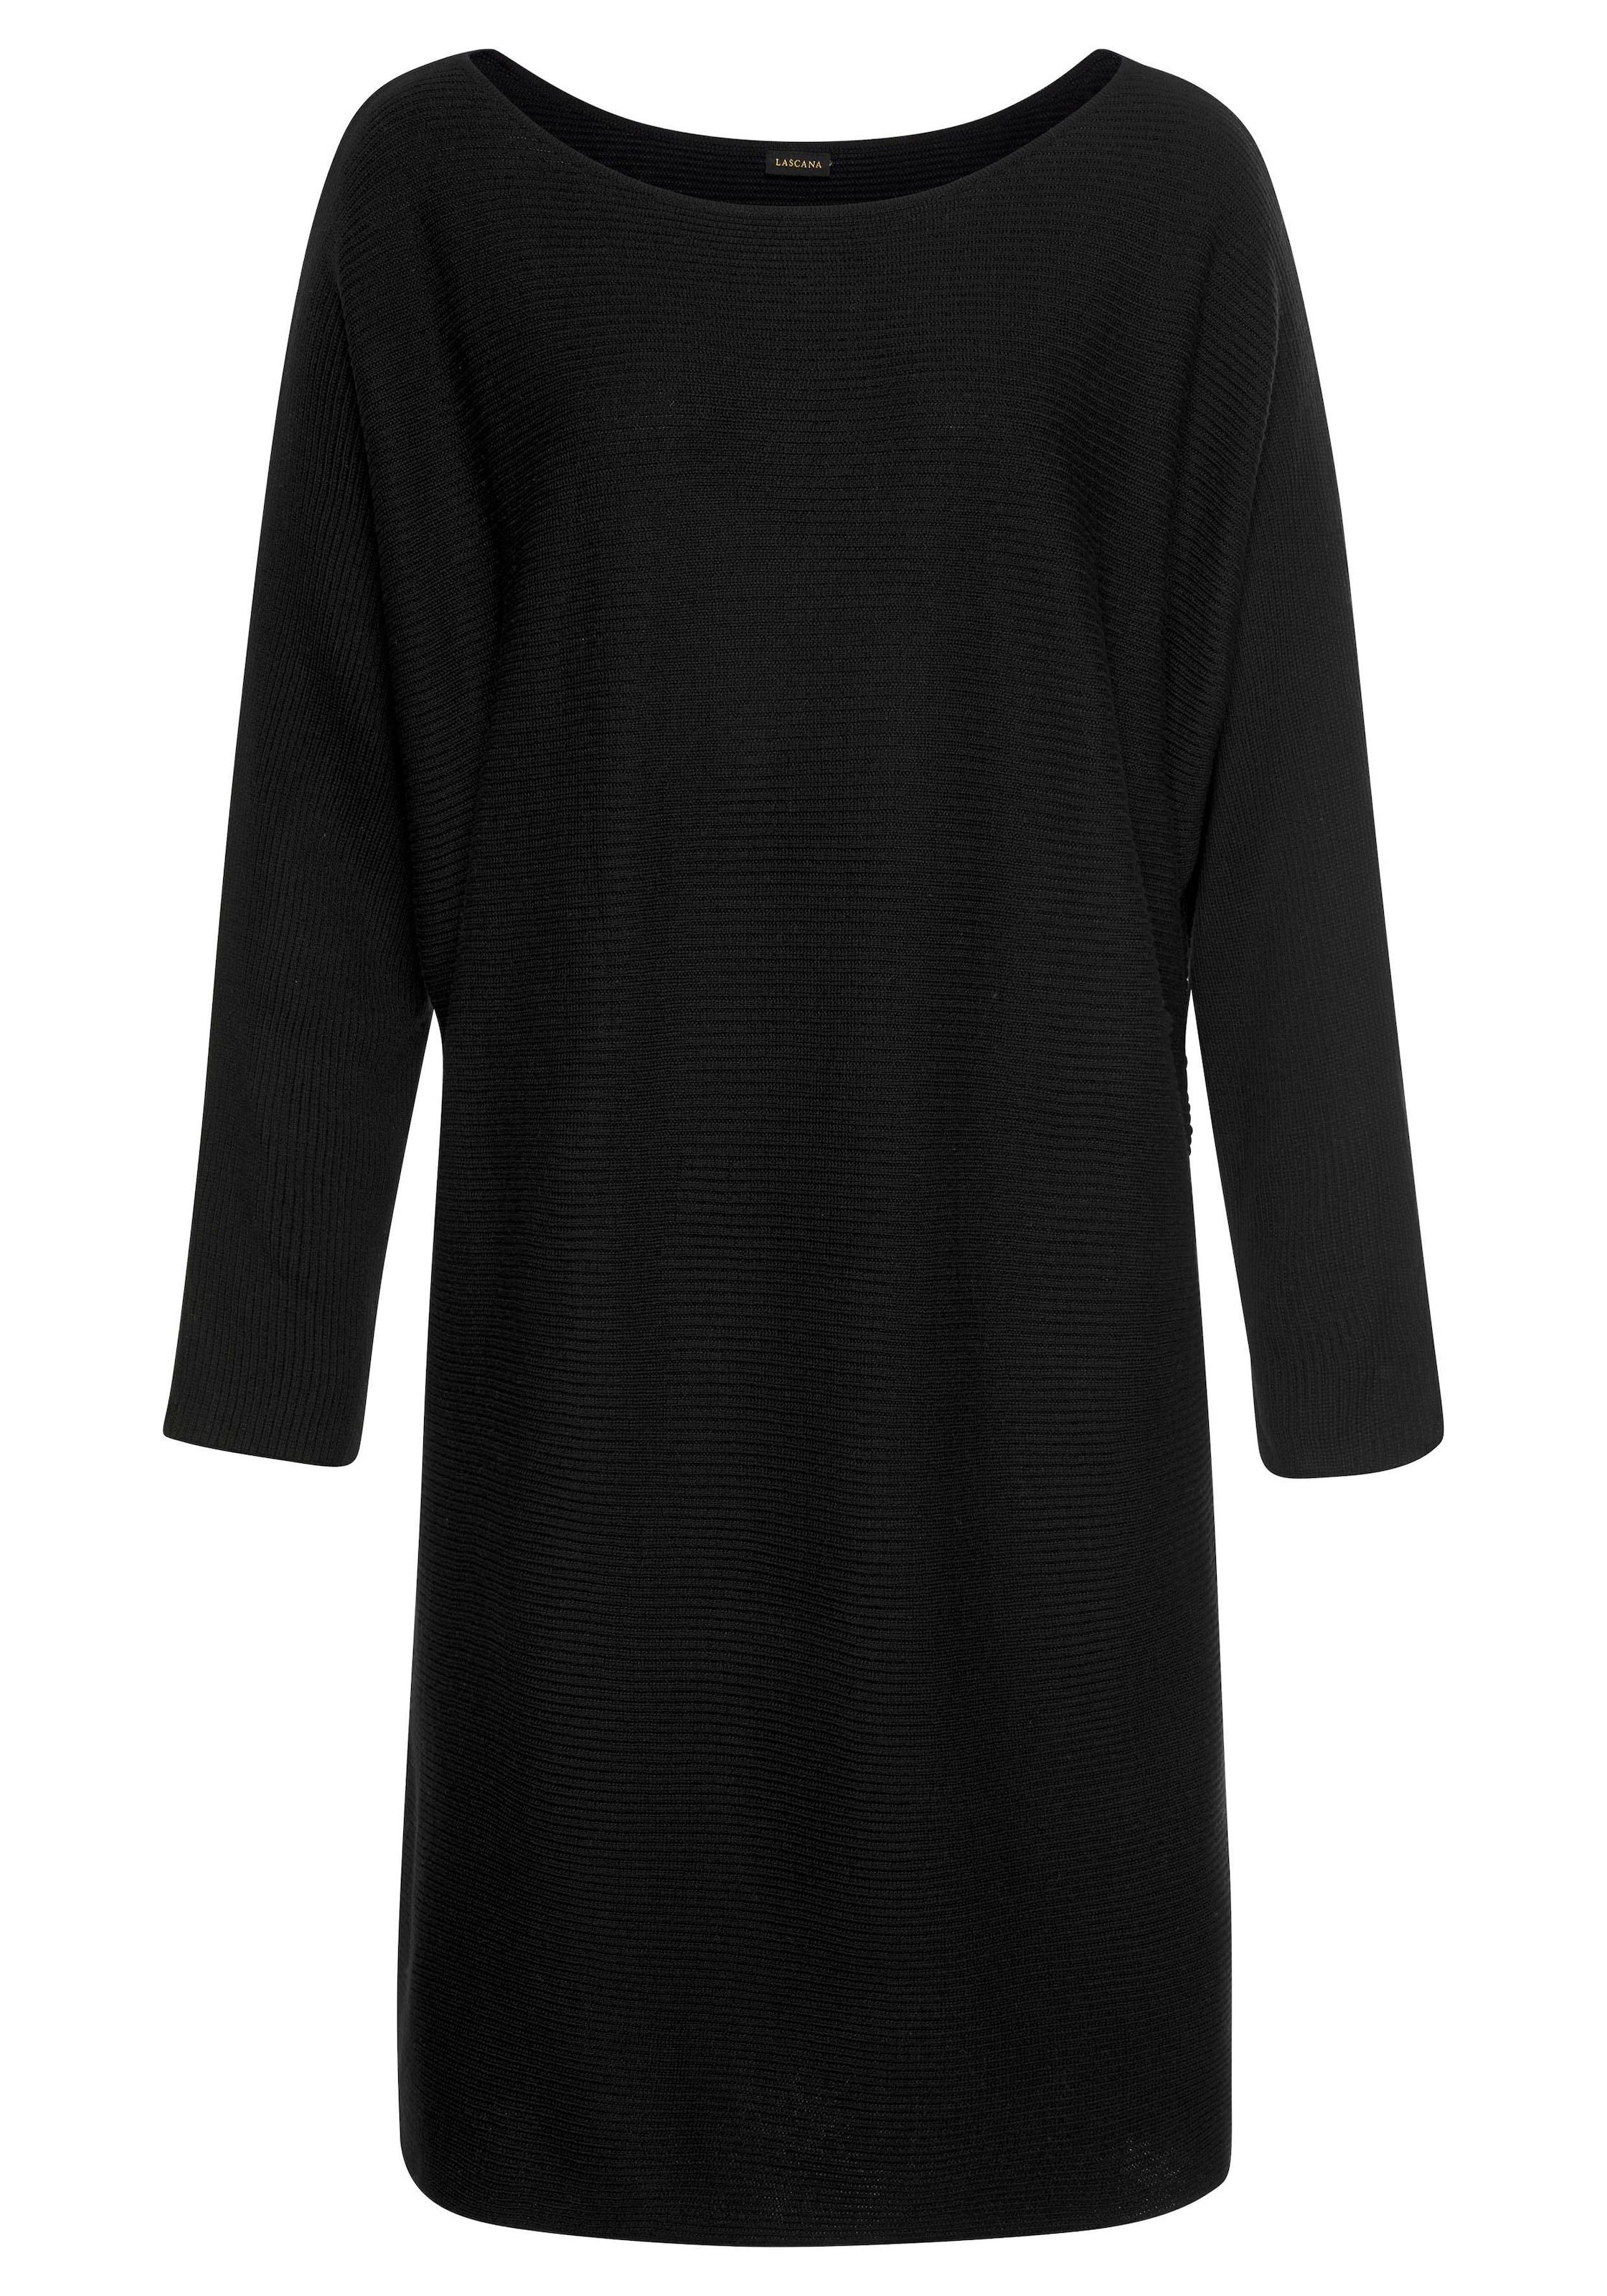 ONLY Strickkleid DRESS KNT« V-NECK LS shoppen CC »ONLCATA